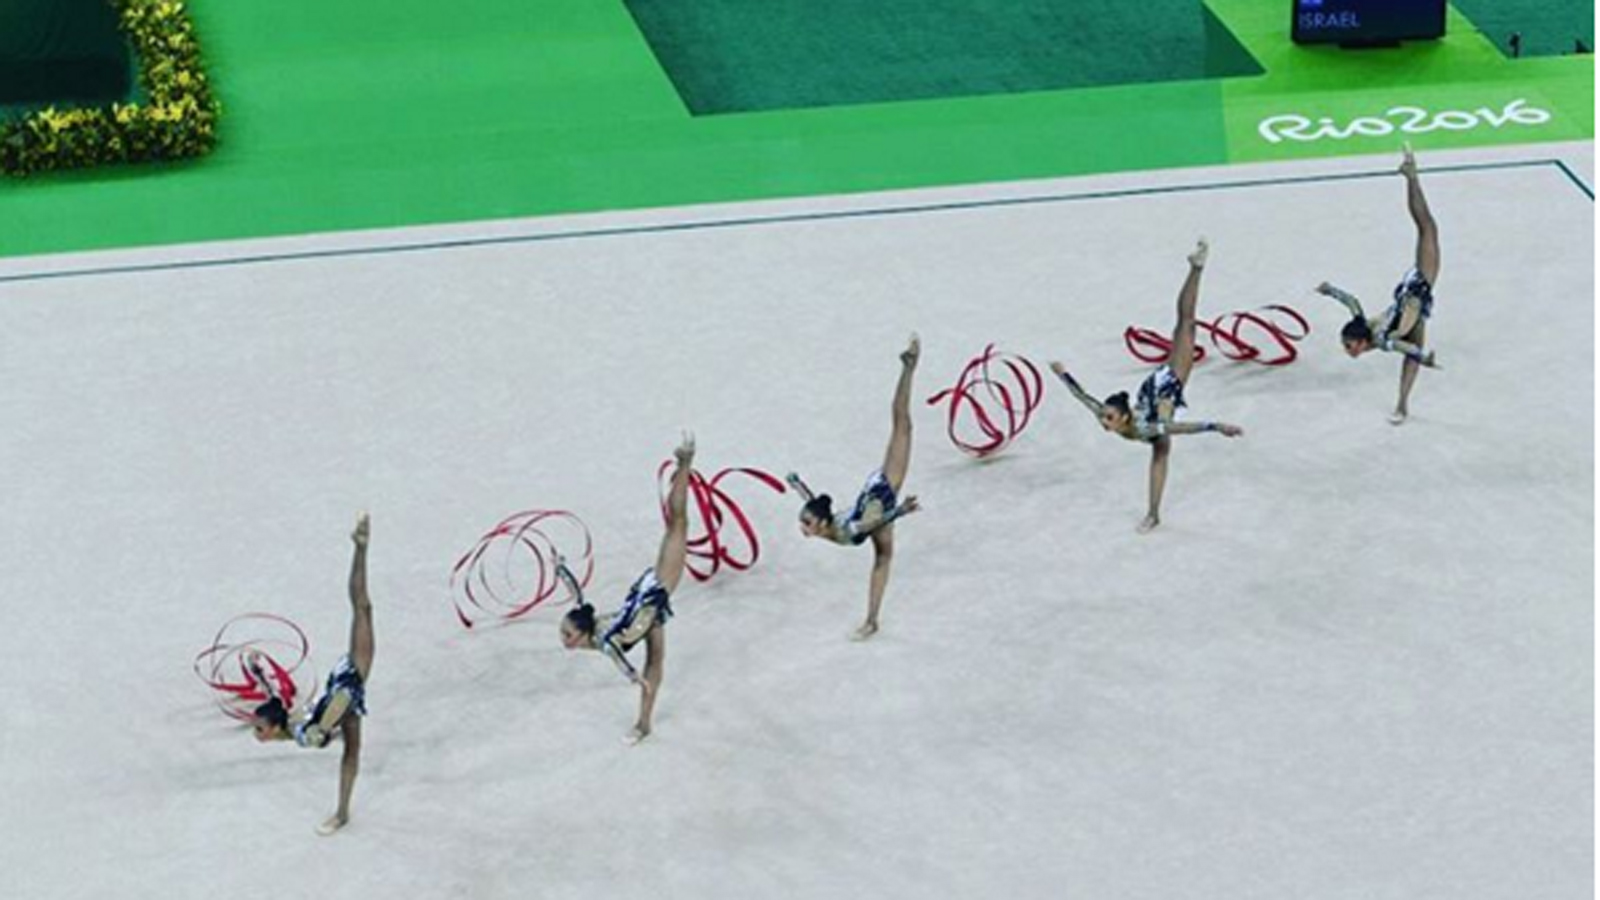 Israel's rhythmic gymnastics squad in Rio. Photo via instagram.com/olympicteamisrael